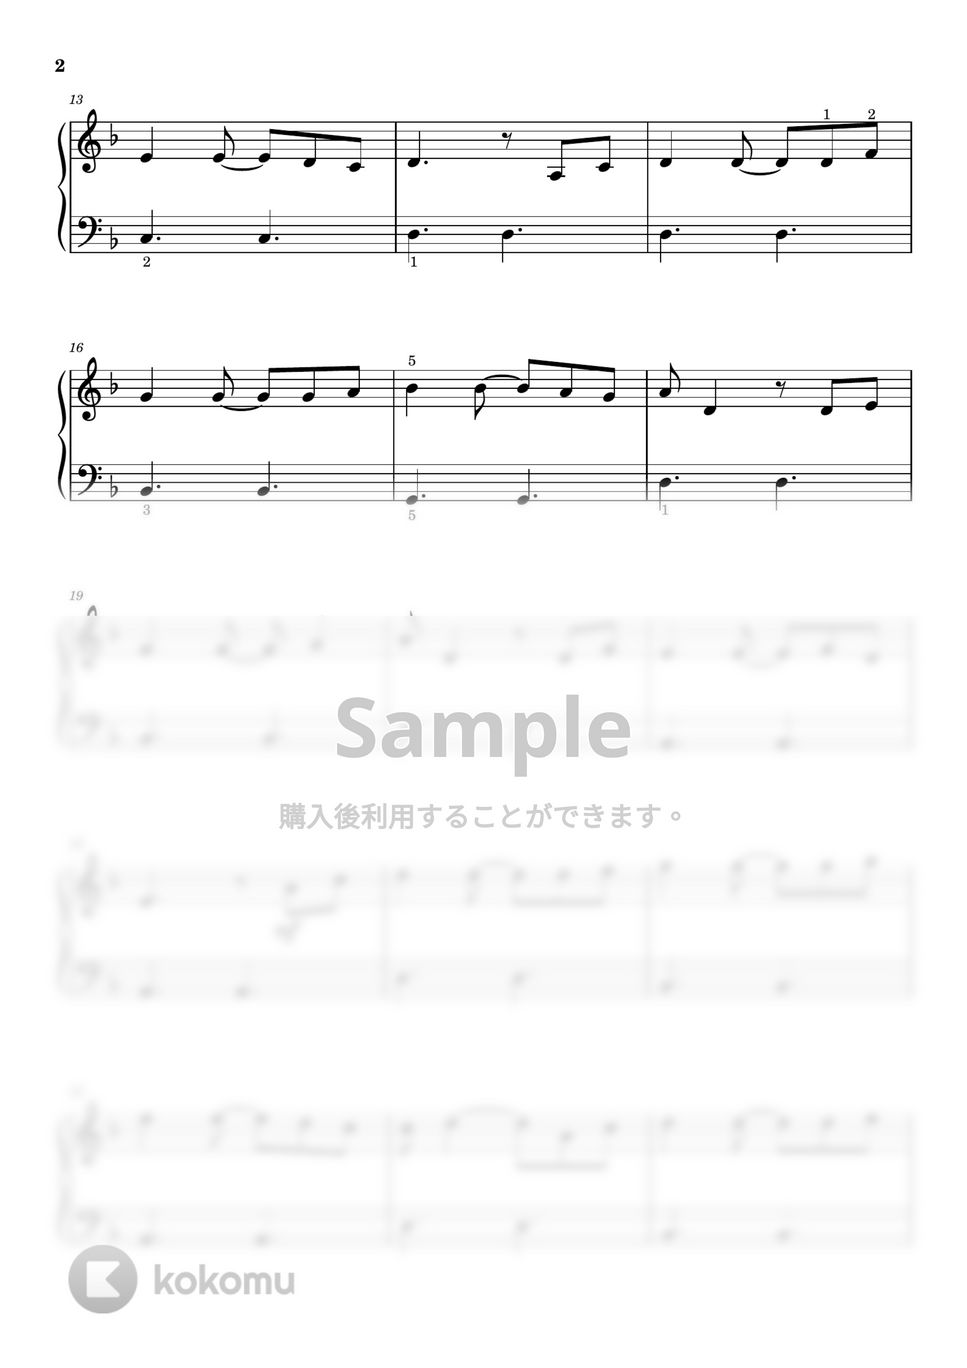 ハンス・ジマー - 彼こそが海賊 (ピアノ入門ソロ) by pianon